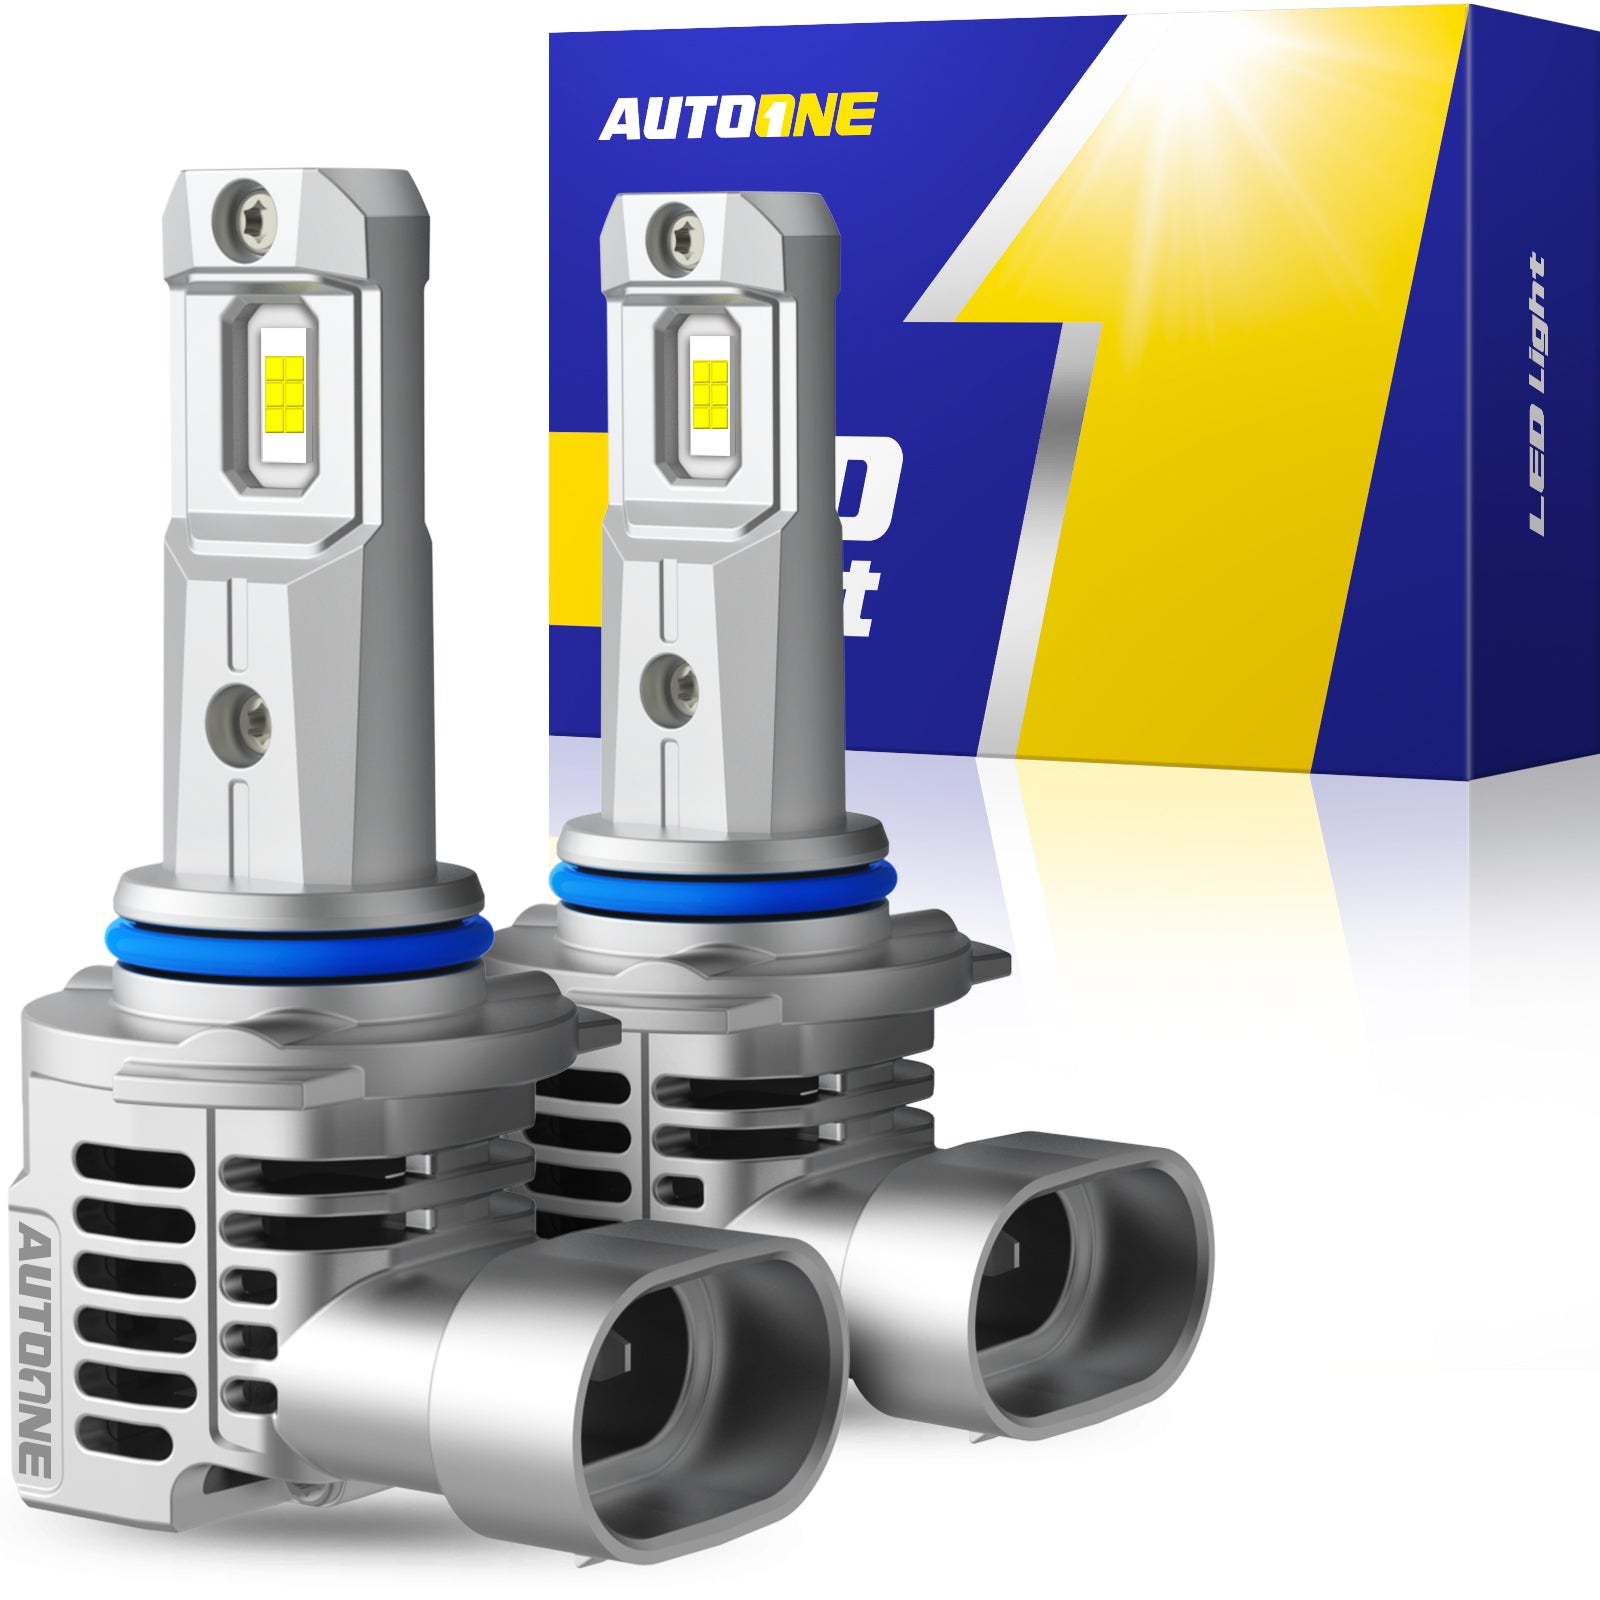 AutoSky 9005 HB3 LED Headlight Bulbs, Pack of 2 - AutoSky